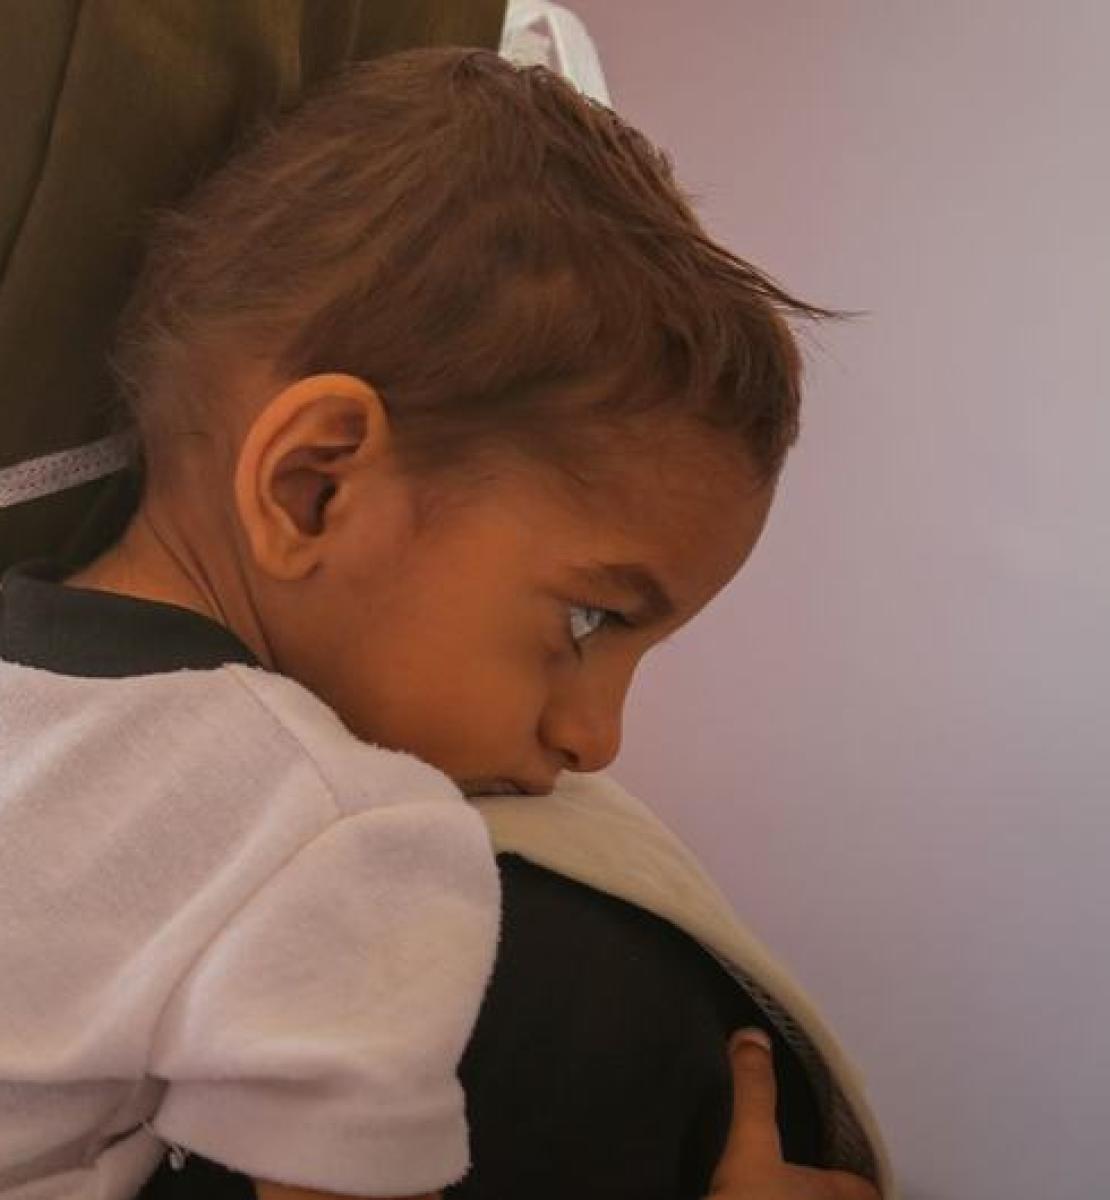 在也门萨那的一家医院，一名婴儿正在接受营养不良的治疗。